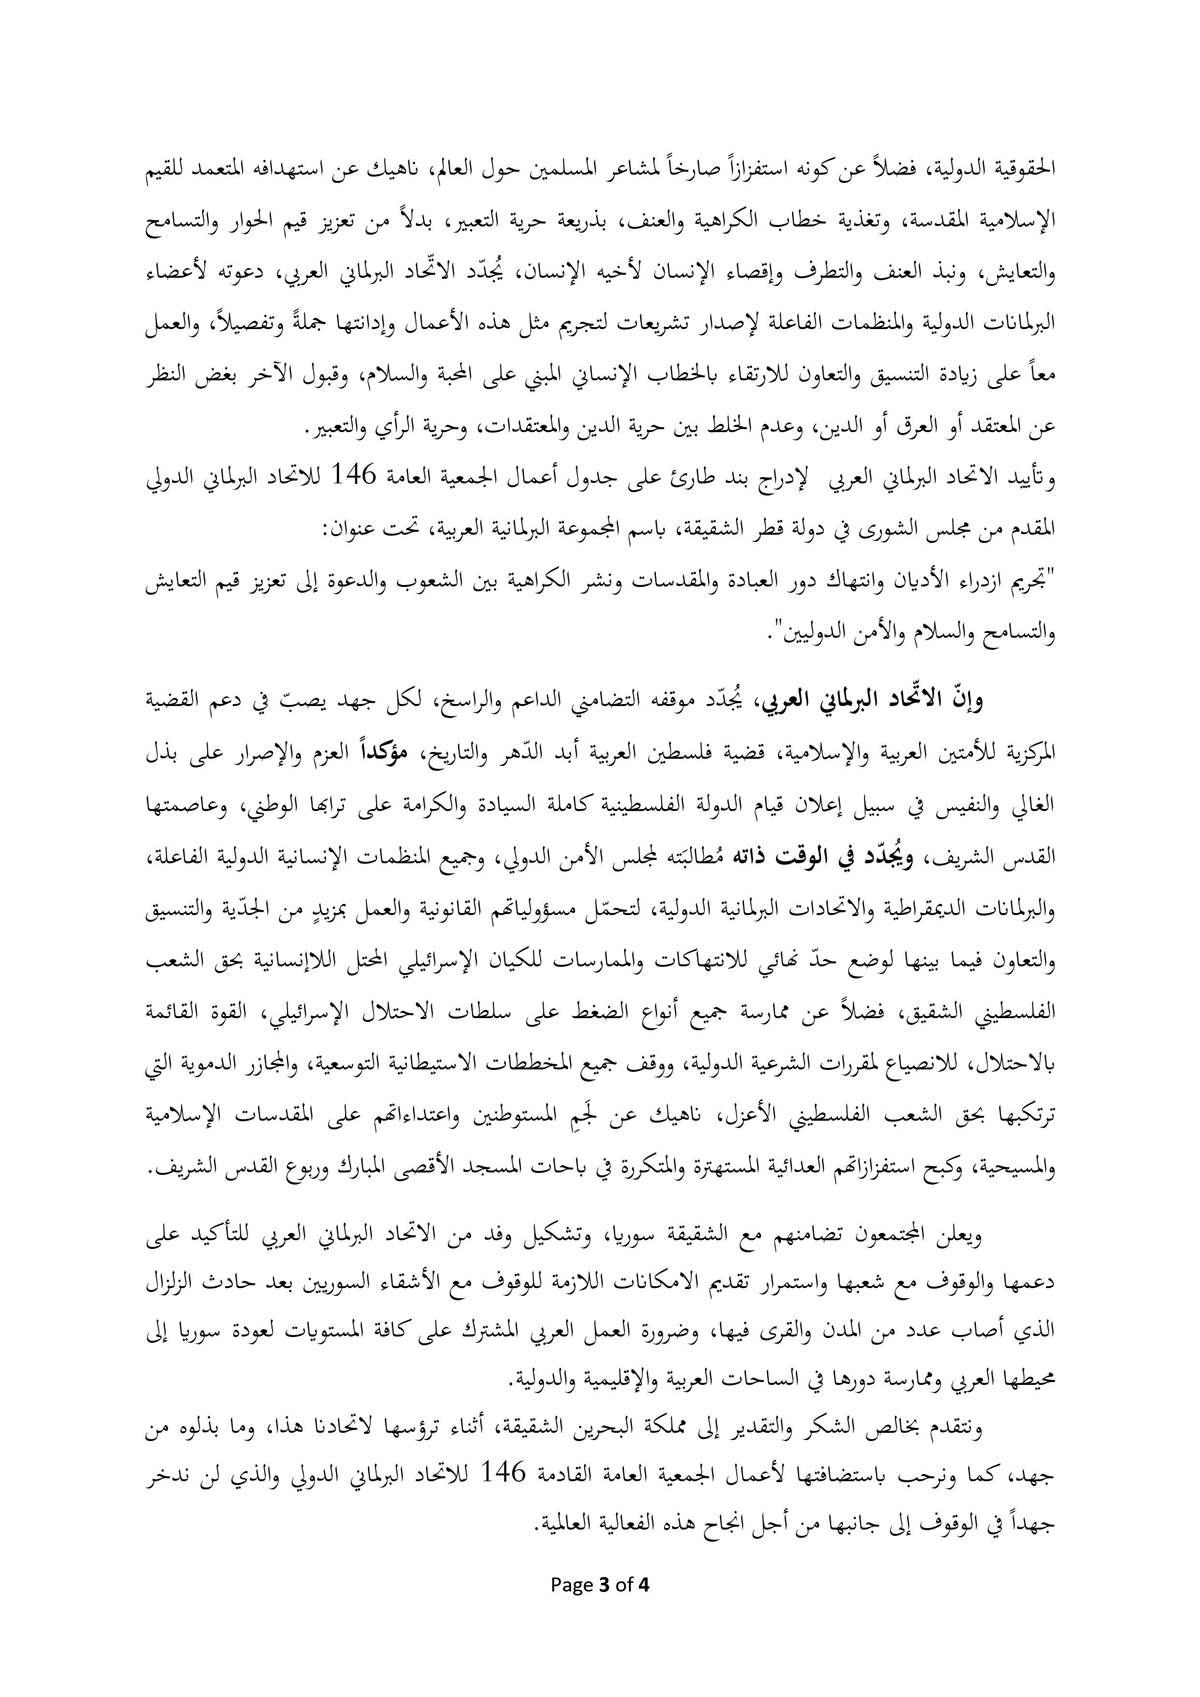 صحيفة العراق تنشُر النص الكامل لإعلان بغداد